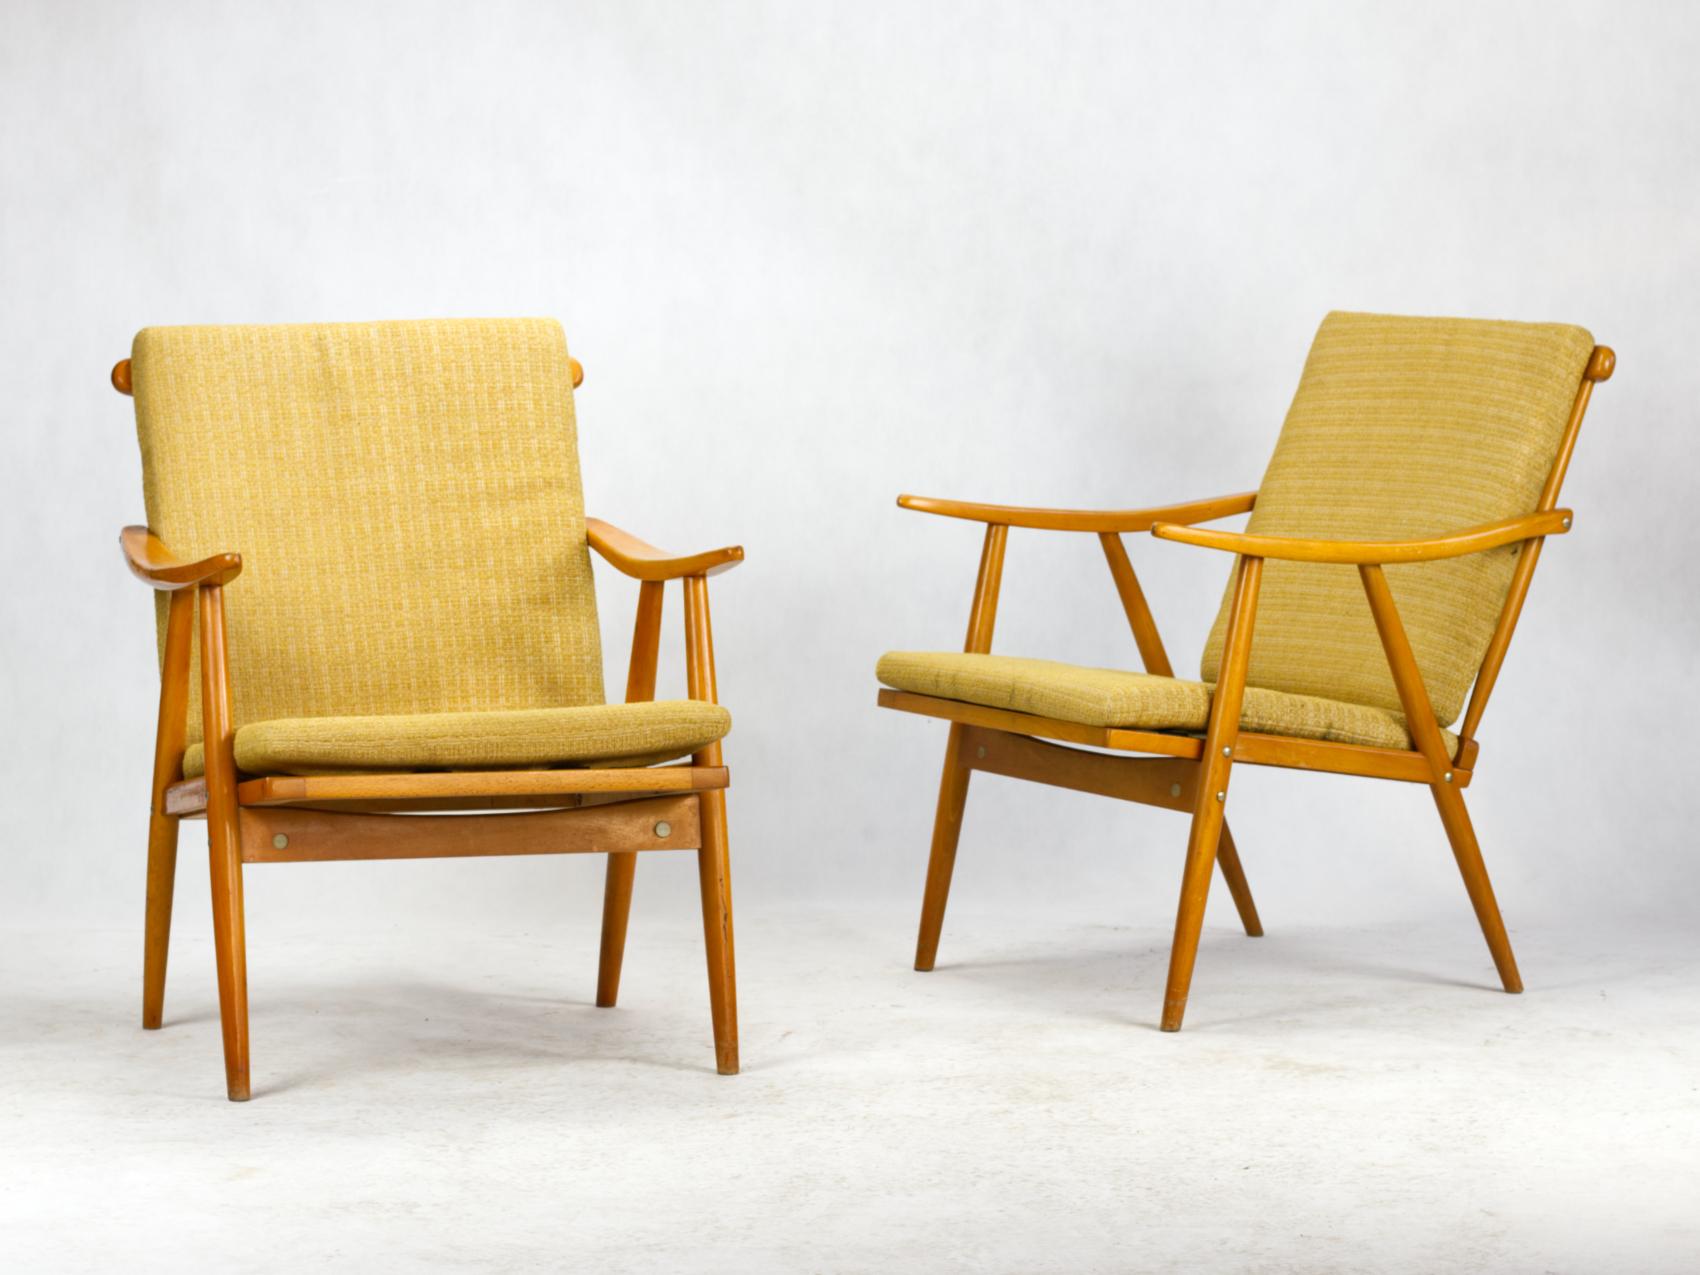 Ces chaises ont été produites par le célèbre fabricant tchécoslovaque TON dans les années 1960.
Les chaises ont été clairement inspirées par l'esthétique scandinave. L'accoudoir aux formes organiques et aux détails précis constitue la principale